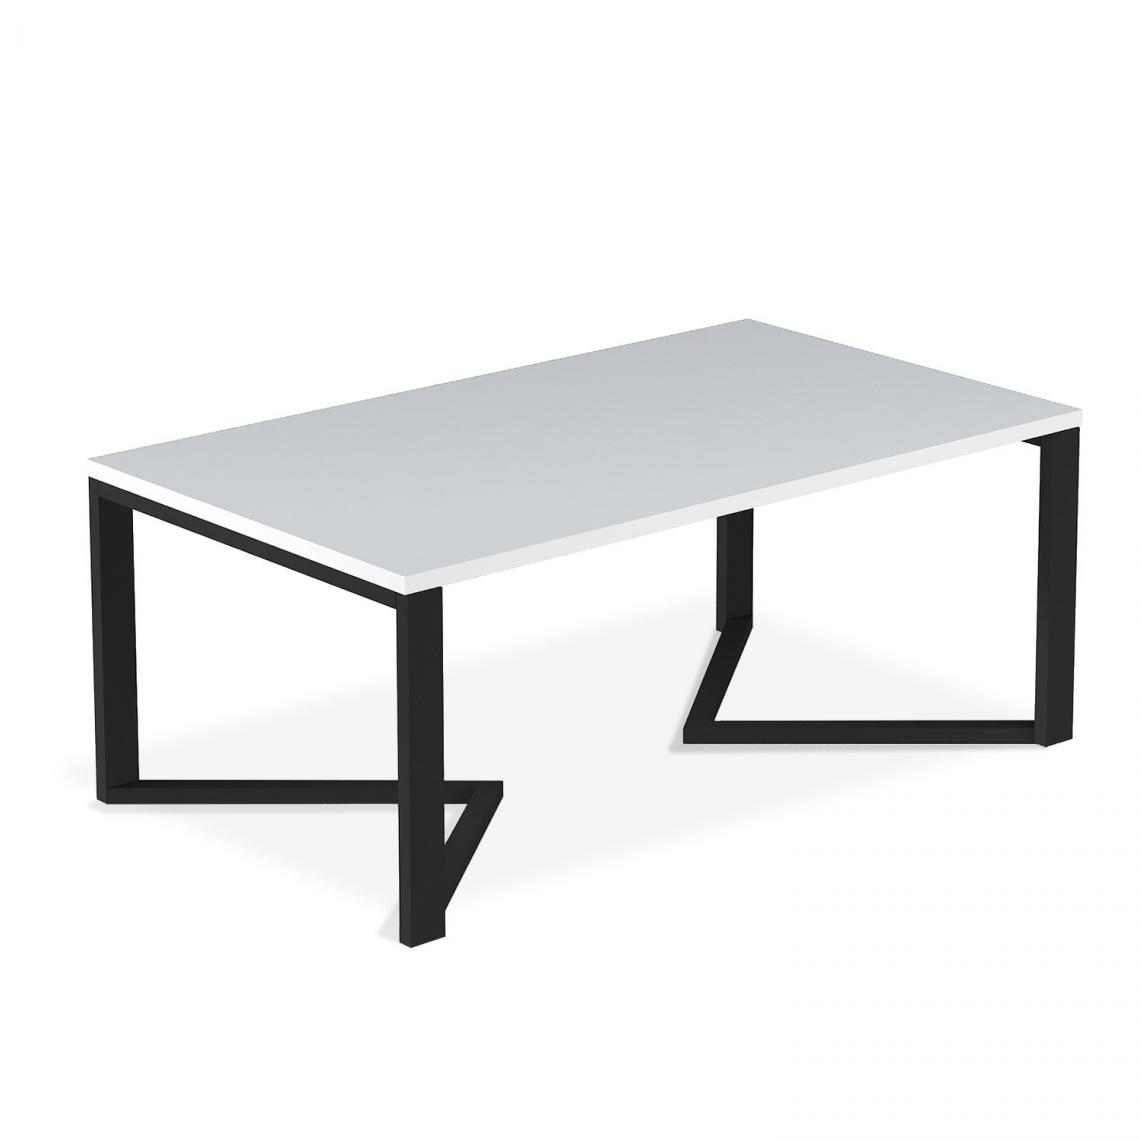 marque generique - Table basse de style industriel Méryl Blanc mat - Tables à manger